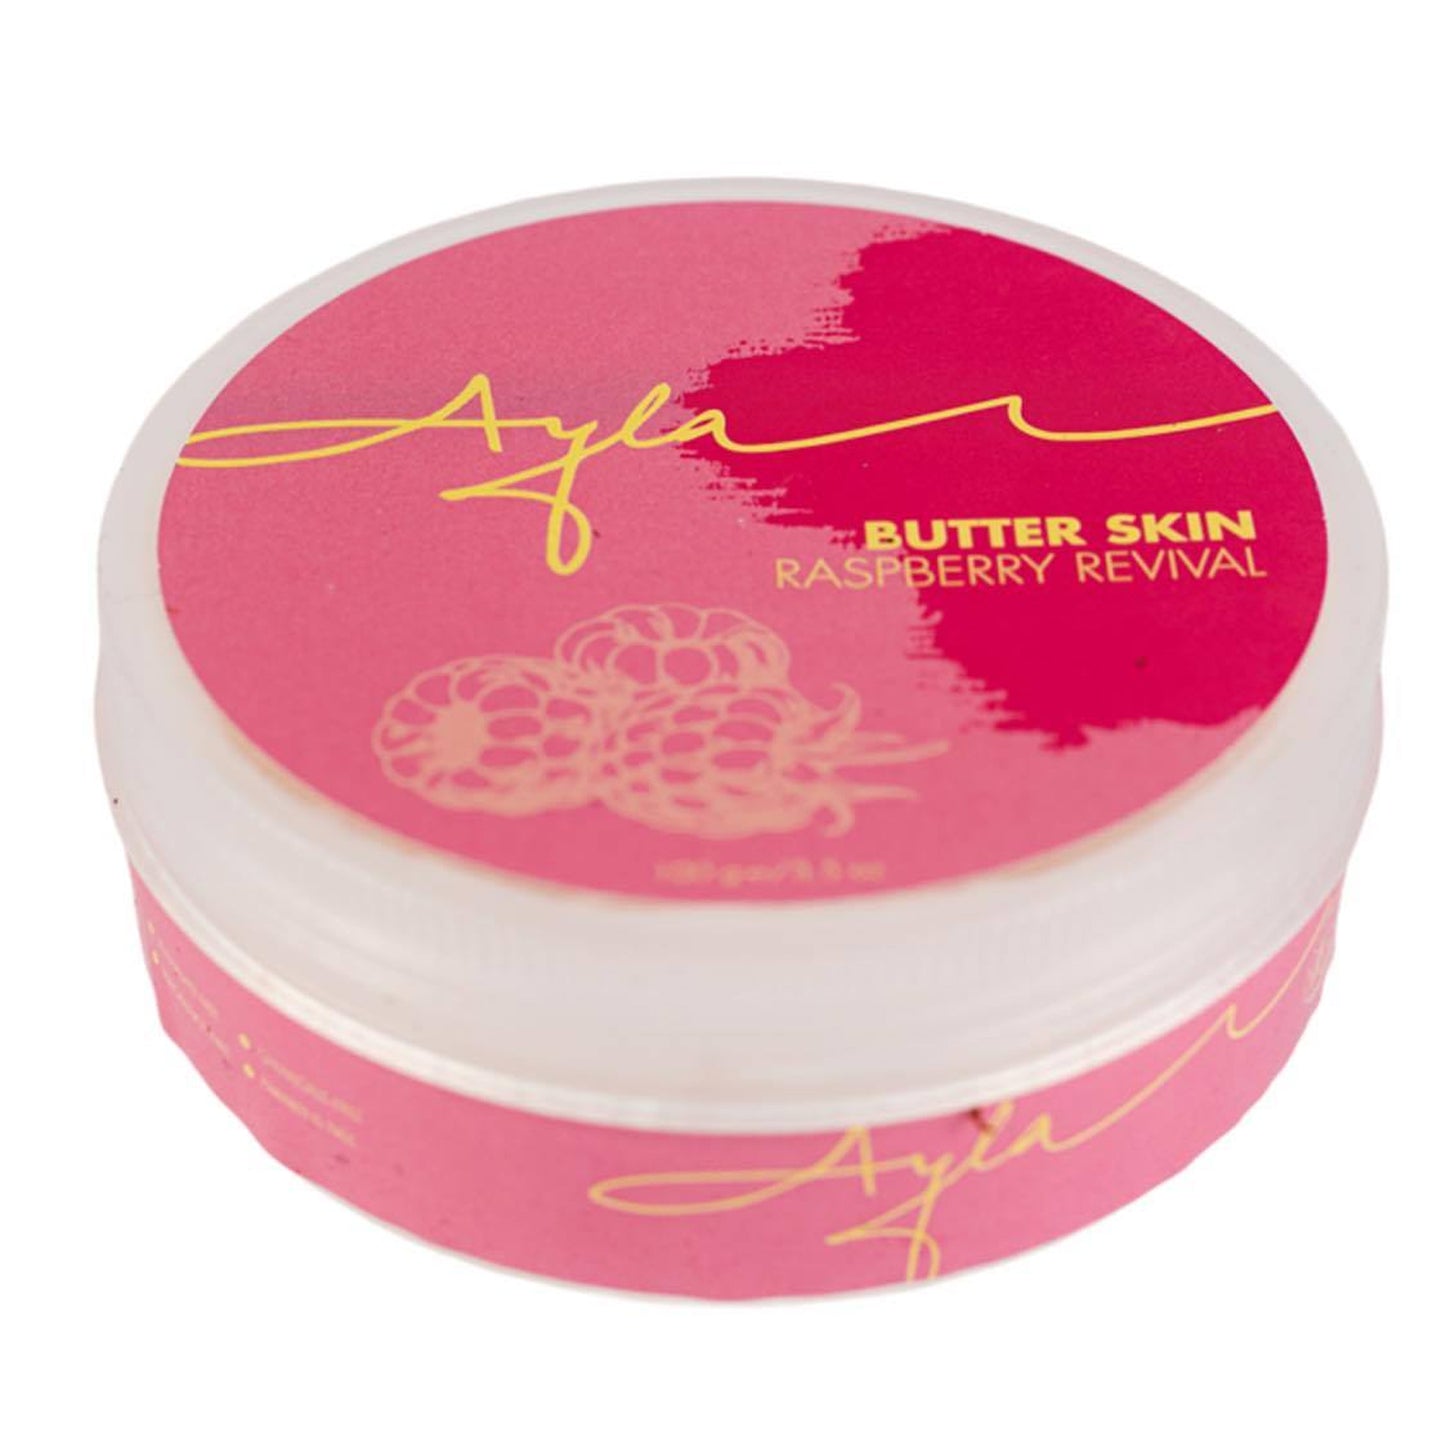 Butter Skin - Raspberry Revival - BambiniJO | Buy Online | Jordan